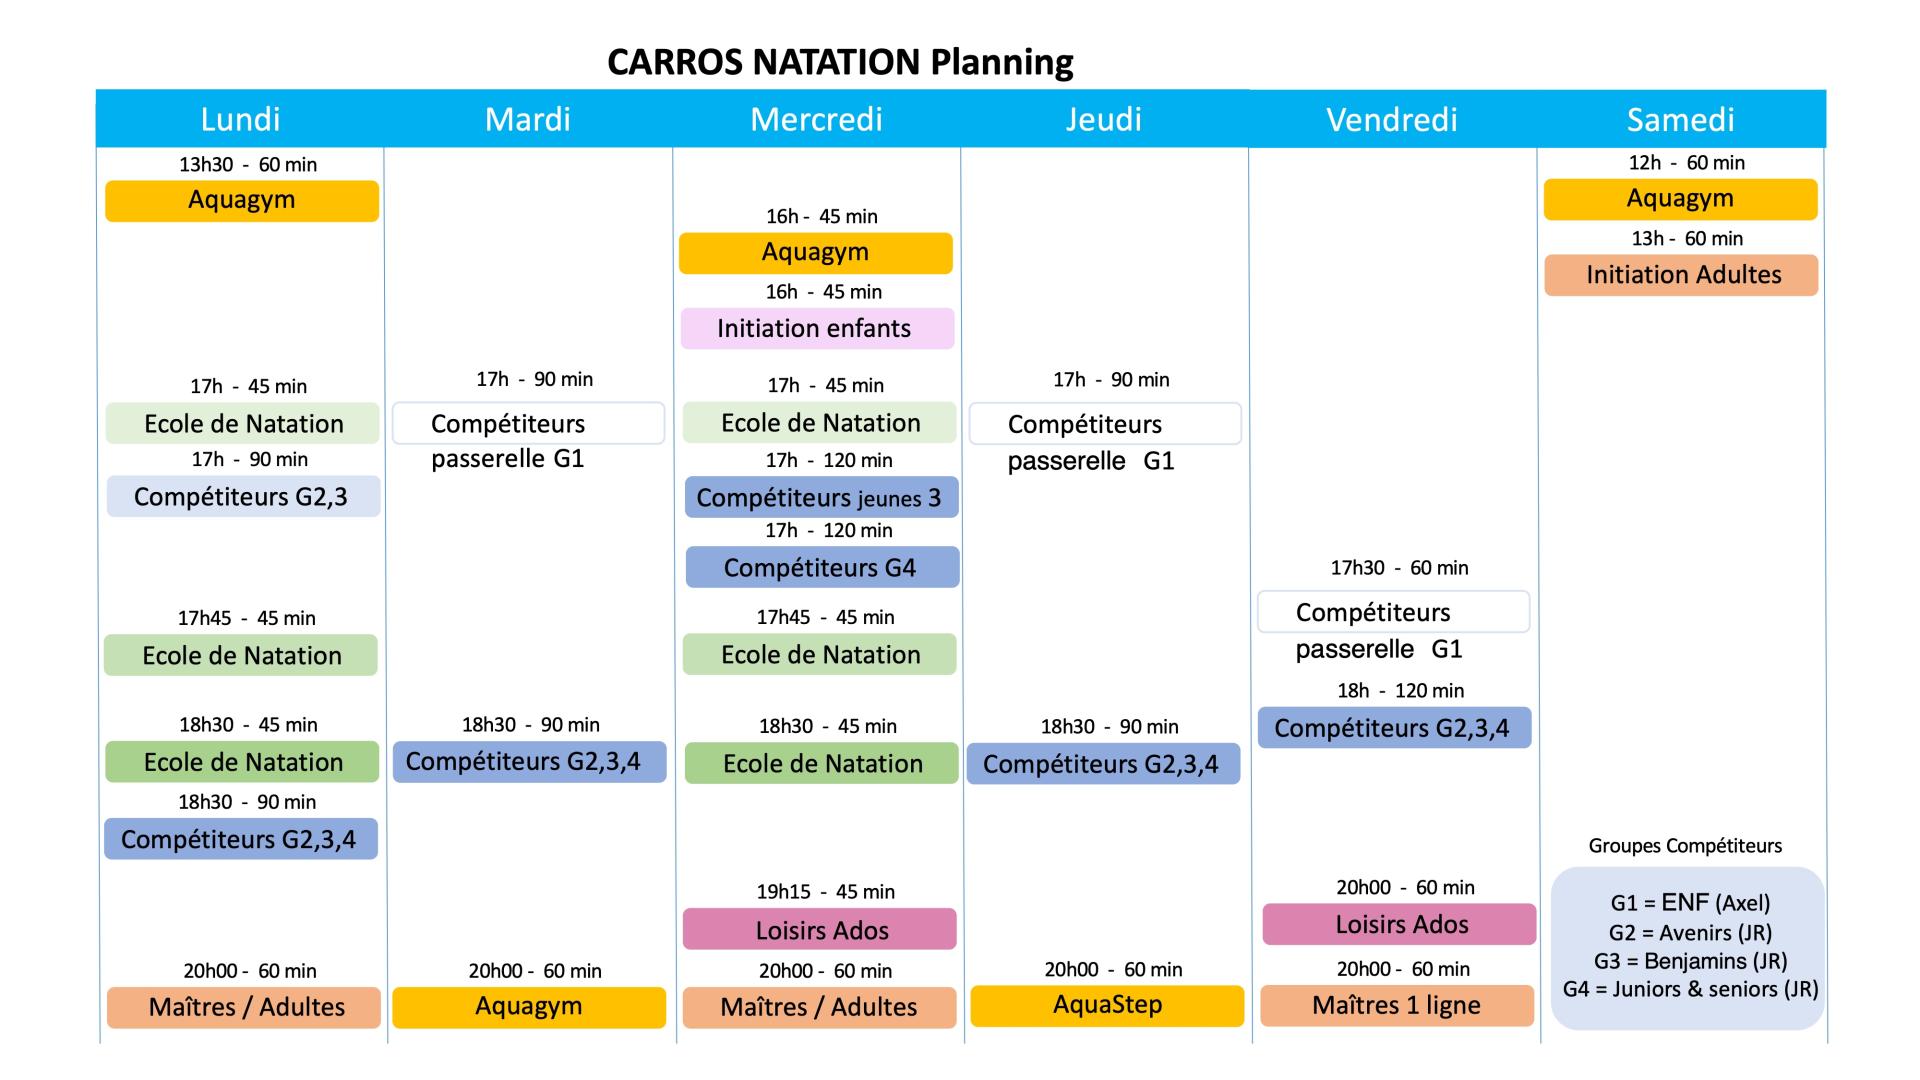 Planning carros natation 2023 24